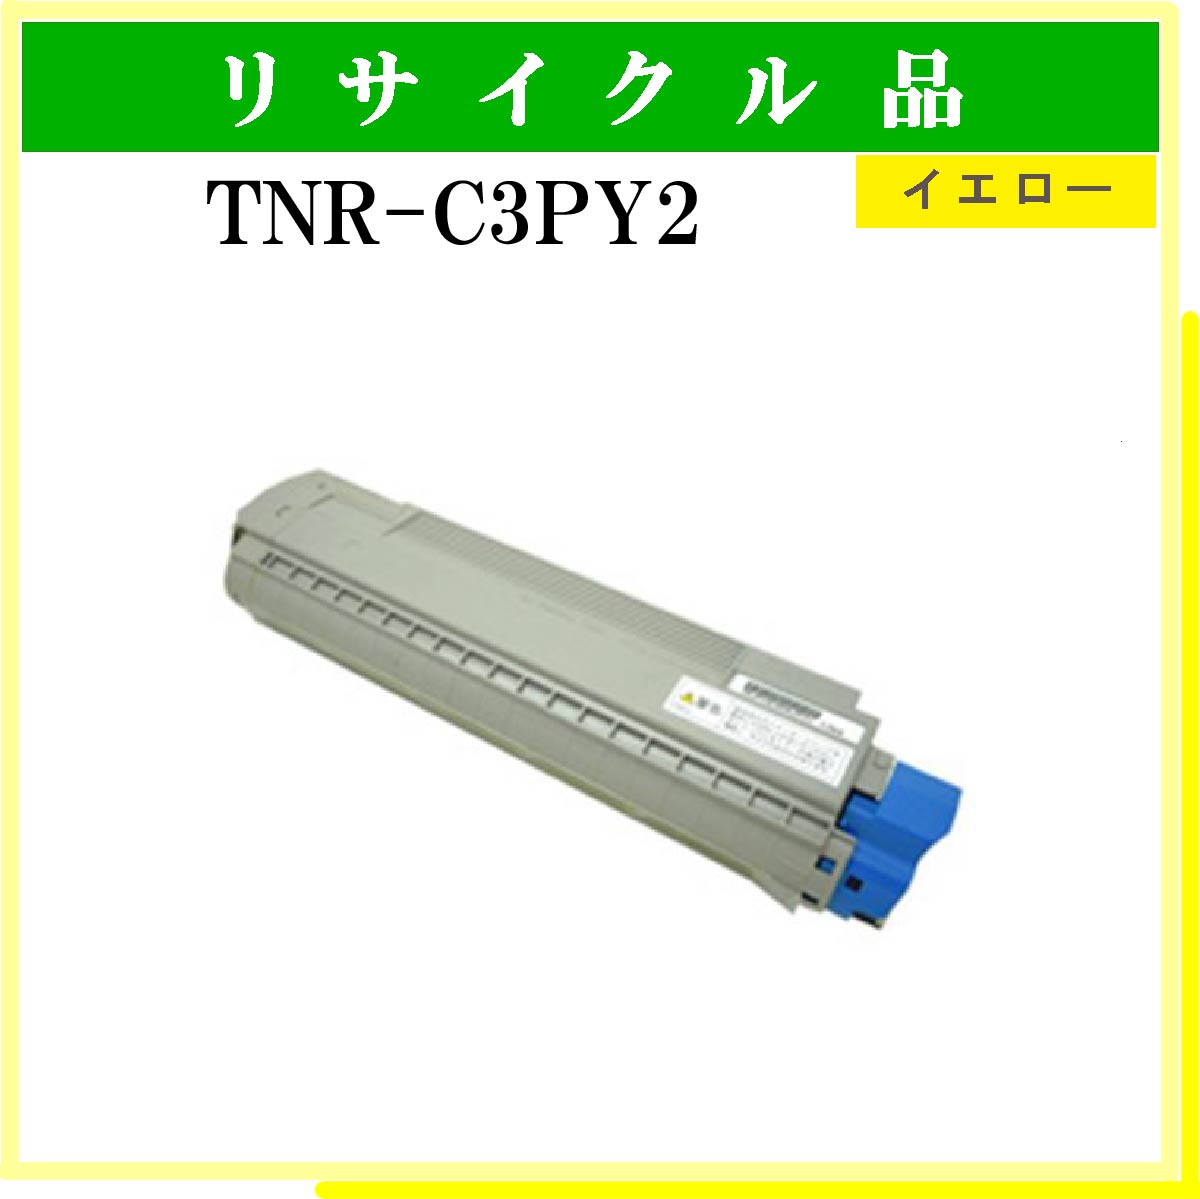 TNR-C3PY2